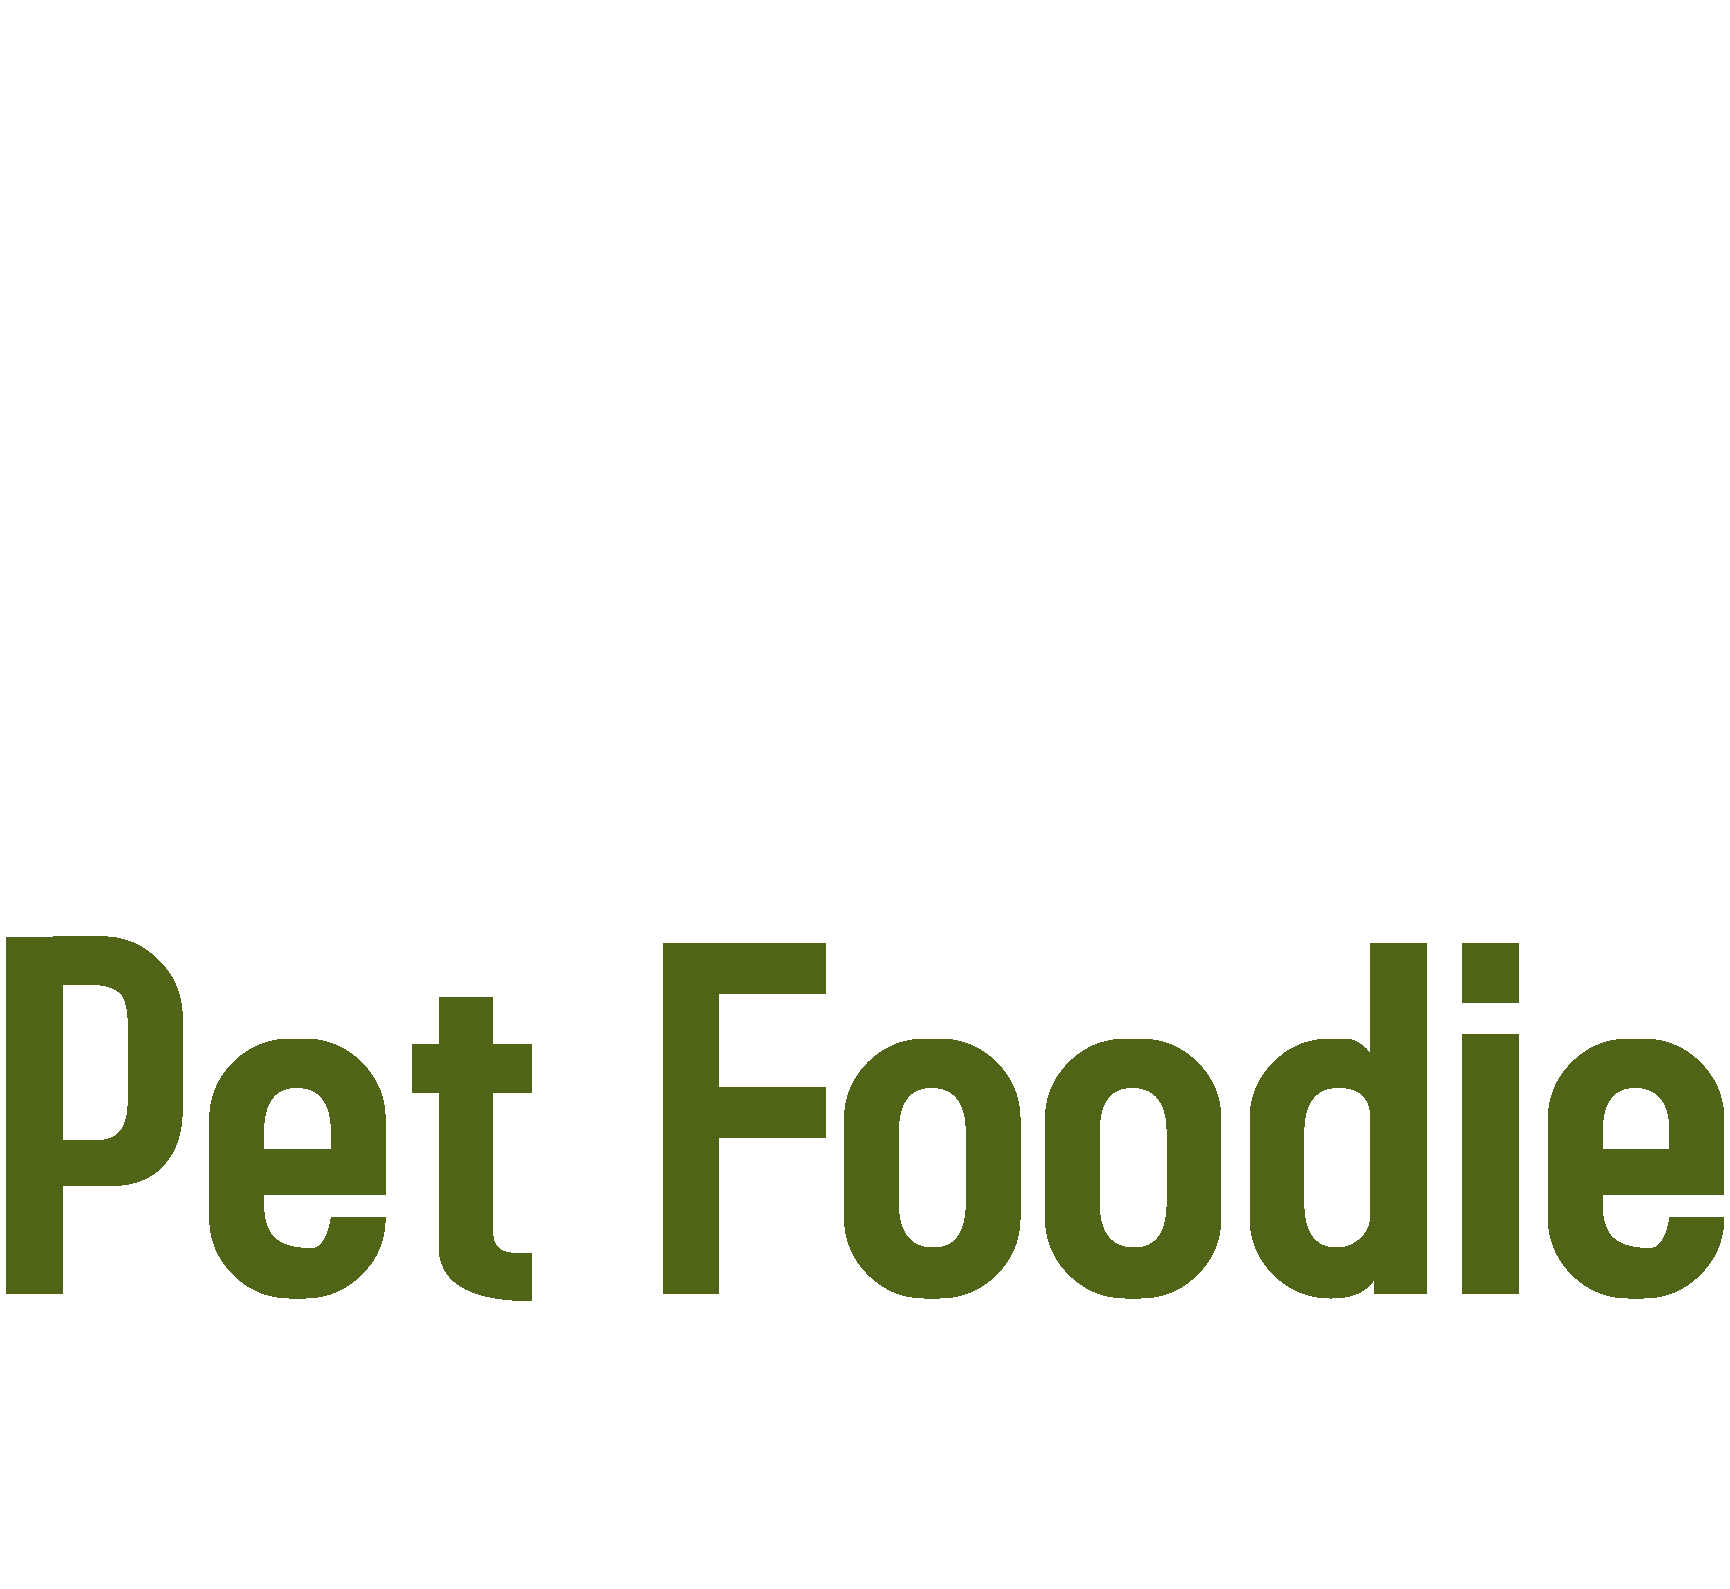 Foodie Logo Vector Illustration Logo Art Stockvektor (royaltyfri)  2279514923 | Shutterstock